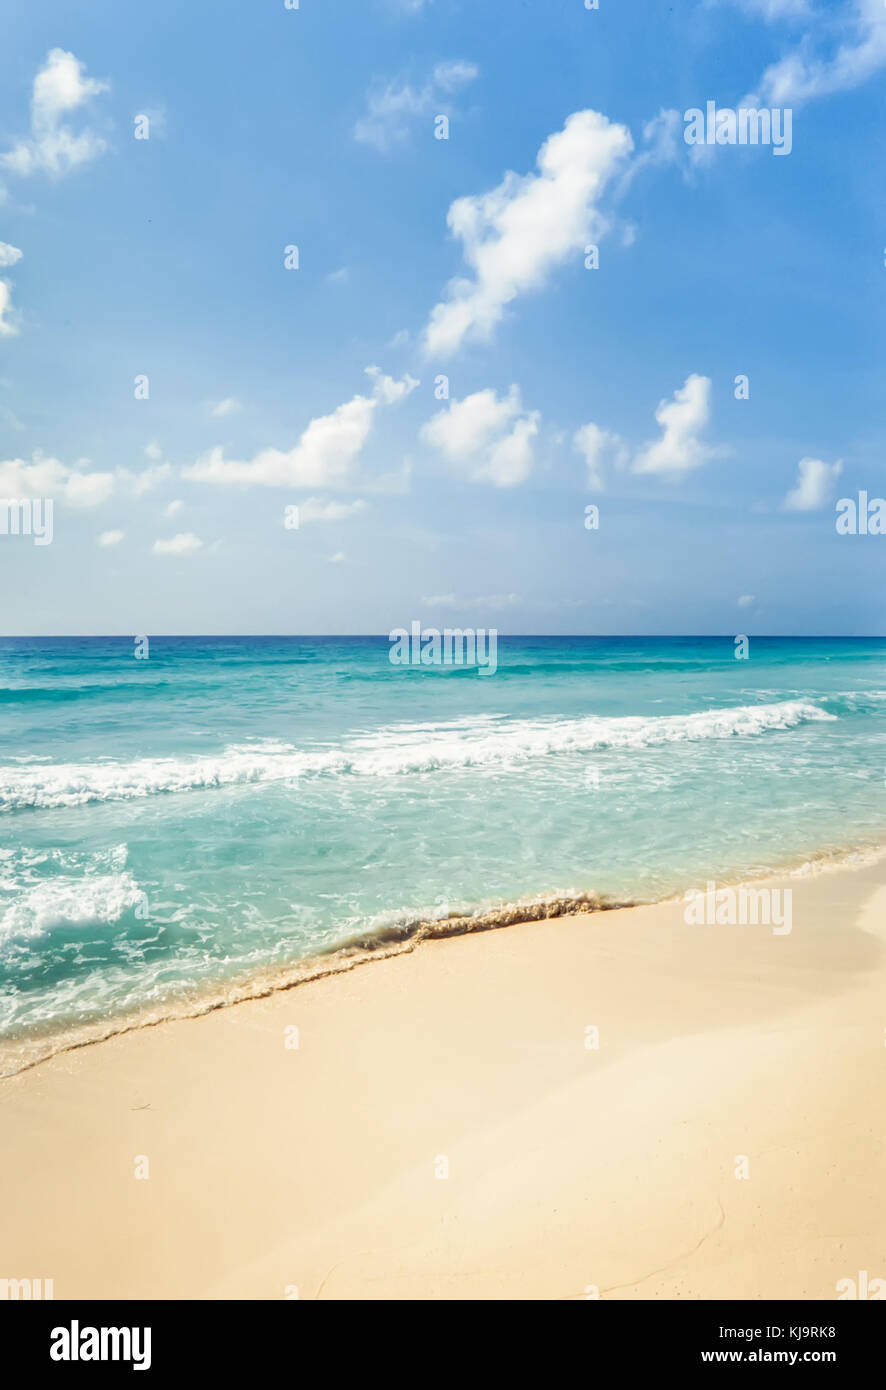 Tropical playa de arena dorada y aguas turquesas bajo un cielo azul en Cancún, México. Foto de stock